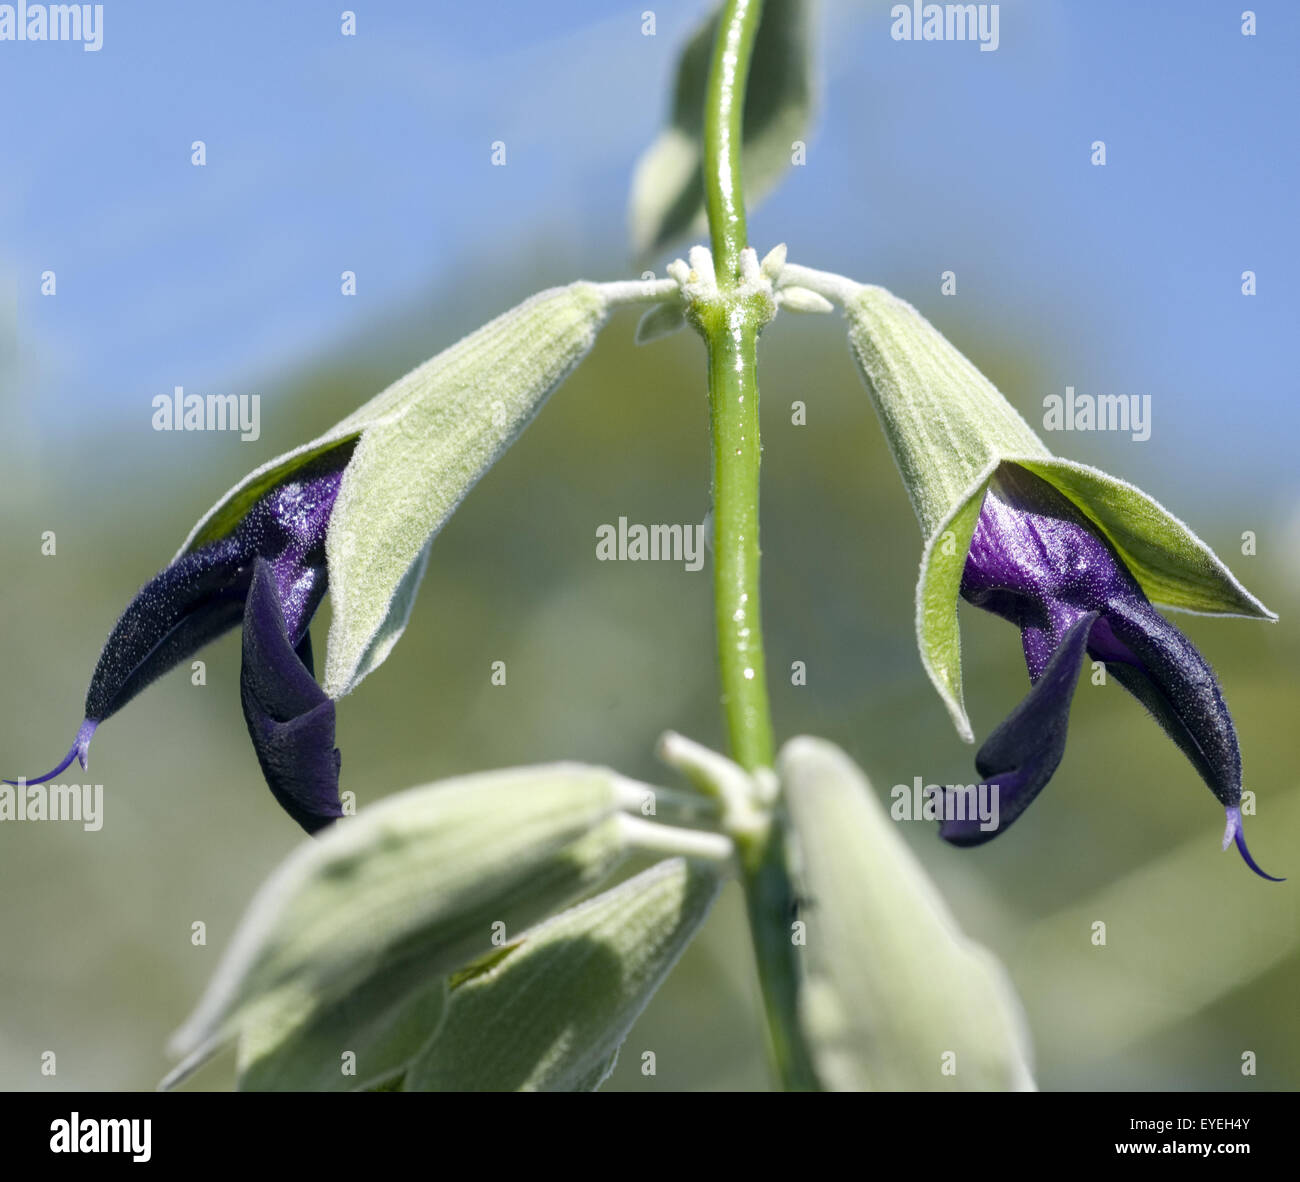 Peruanischer Salbei, Salvia discolor, Heilpflanzen, Stock Photo